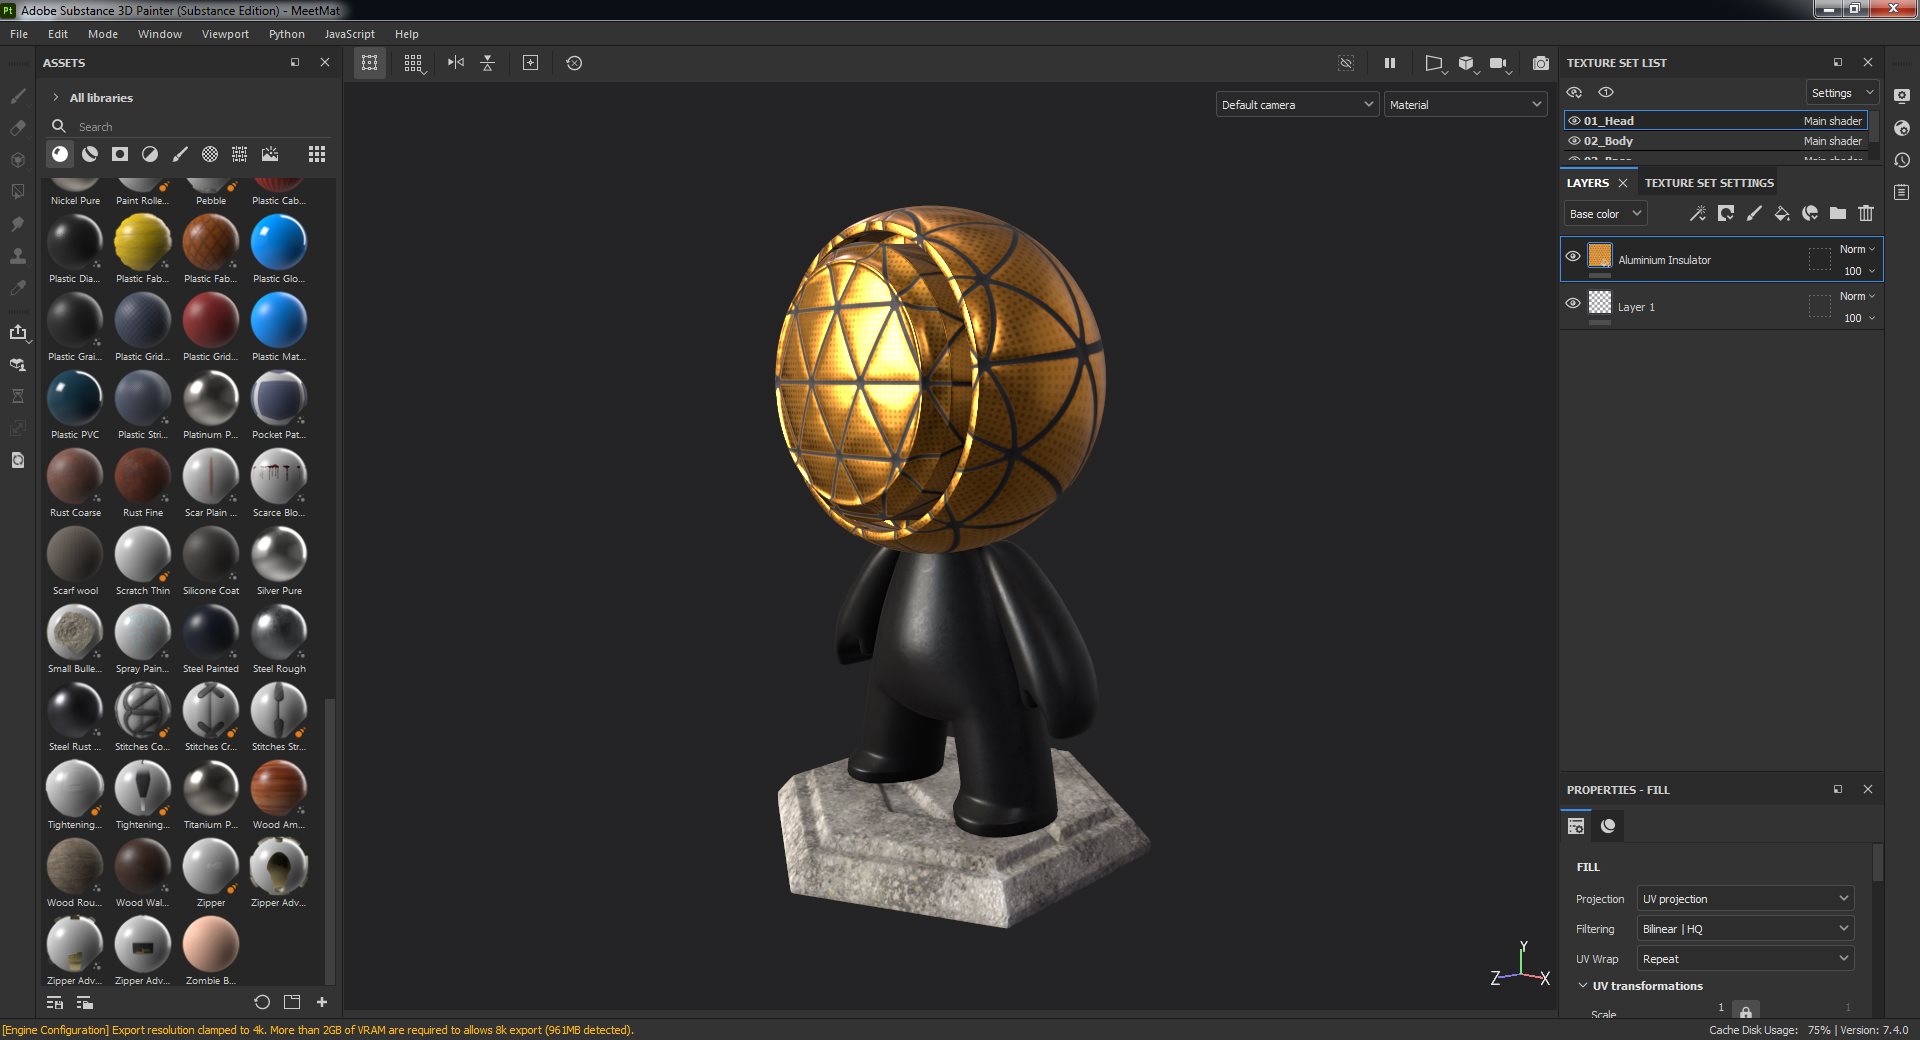 Adobe Substance 3D Painter 7.4.0 Build 1366 [Multi]